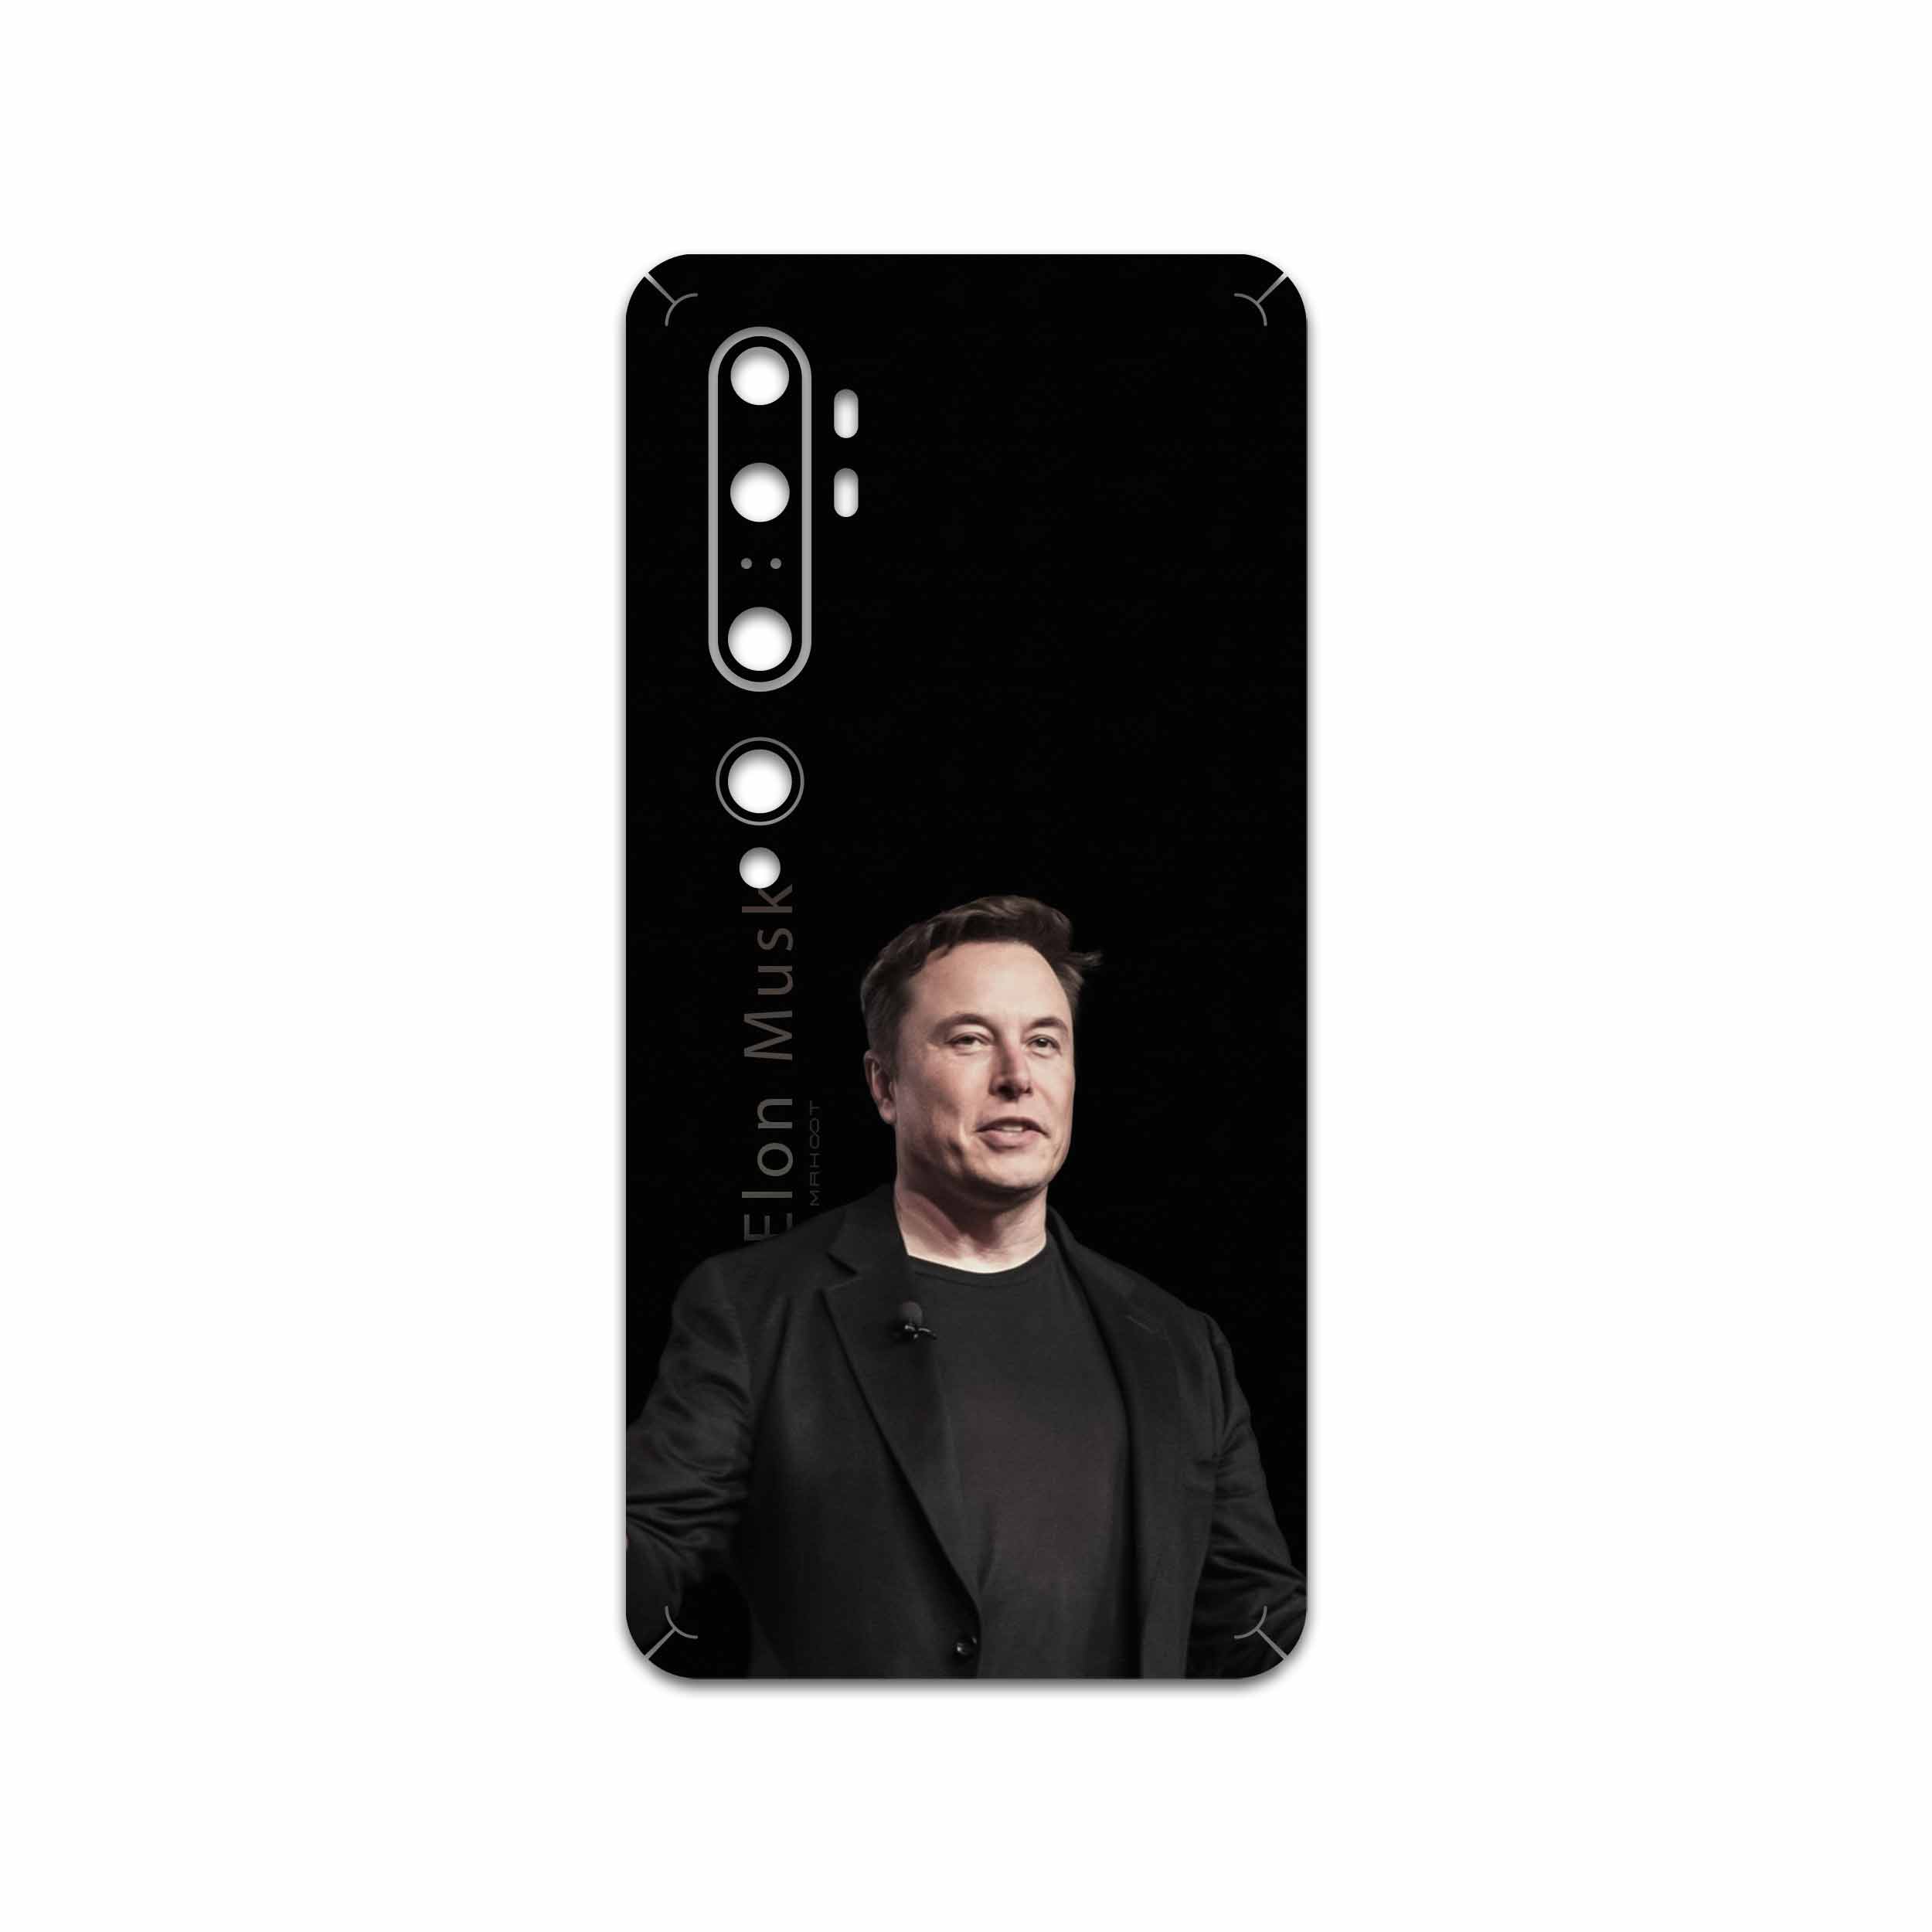 برچسب پوششی ماهوت مدل Elon Musk مناسب برای گوشی موبایل شیائومی Mi Note 10 Pro